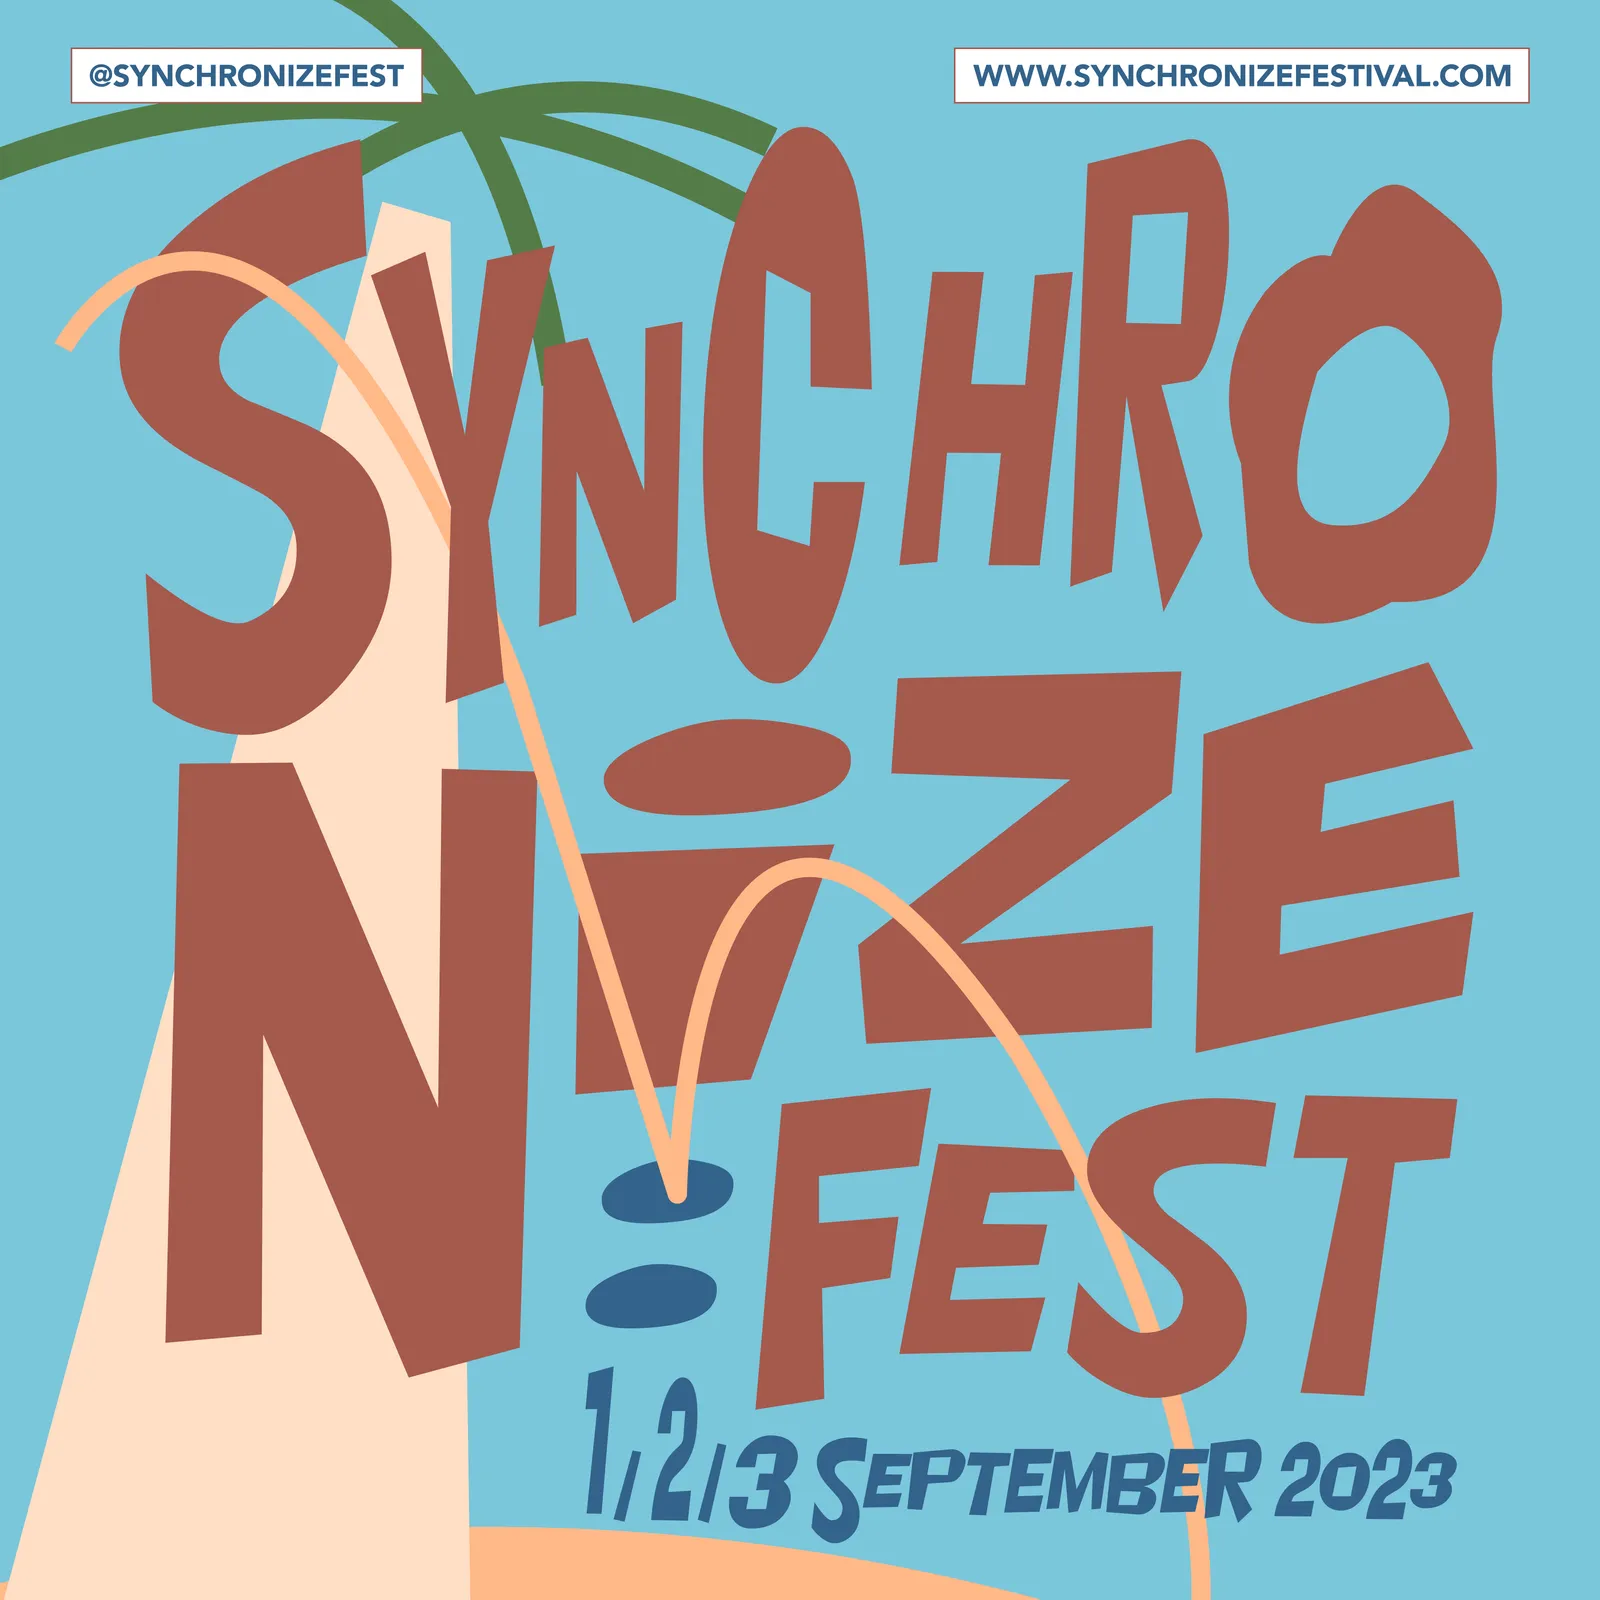 Head-to-Head, Synchronize Fest dan Pestapora Digelar September 2023